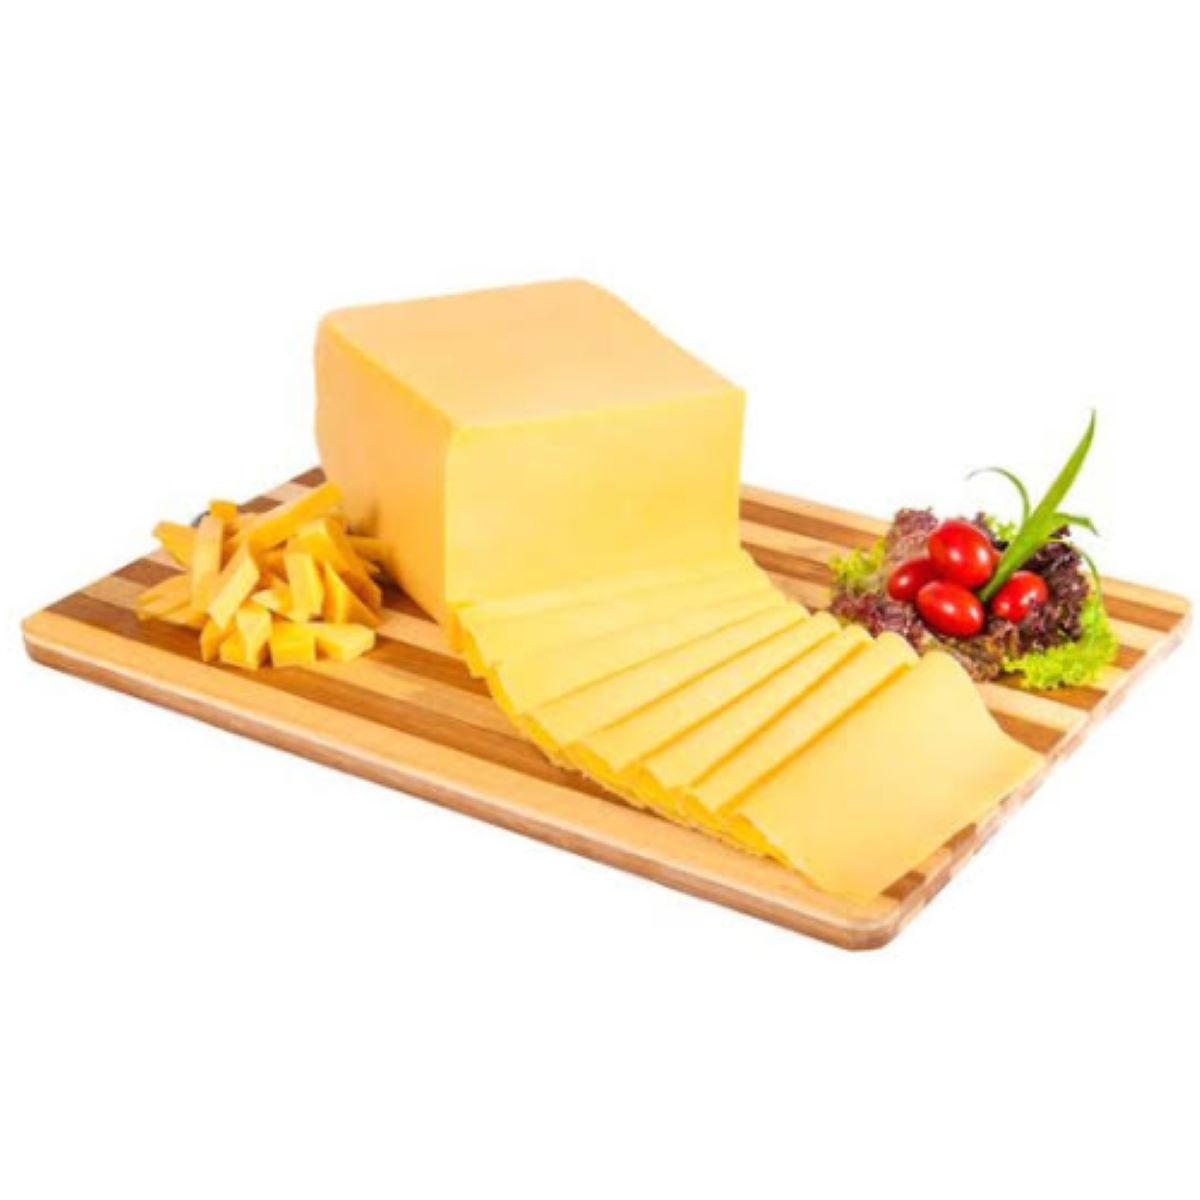 queijo-prato-lanche-faco-kg-1.jpg